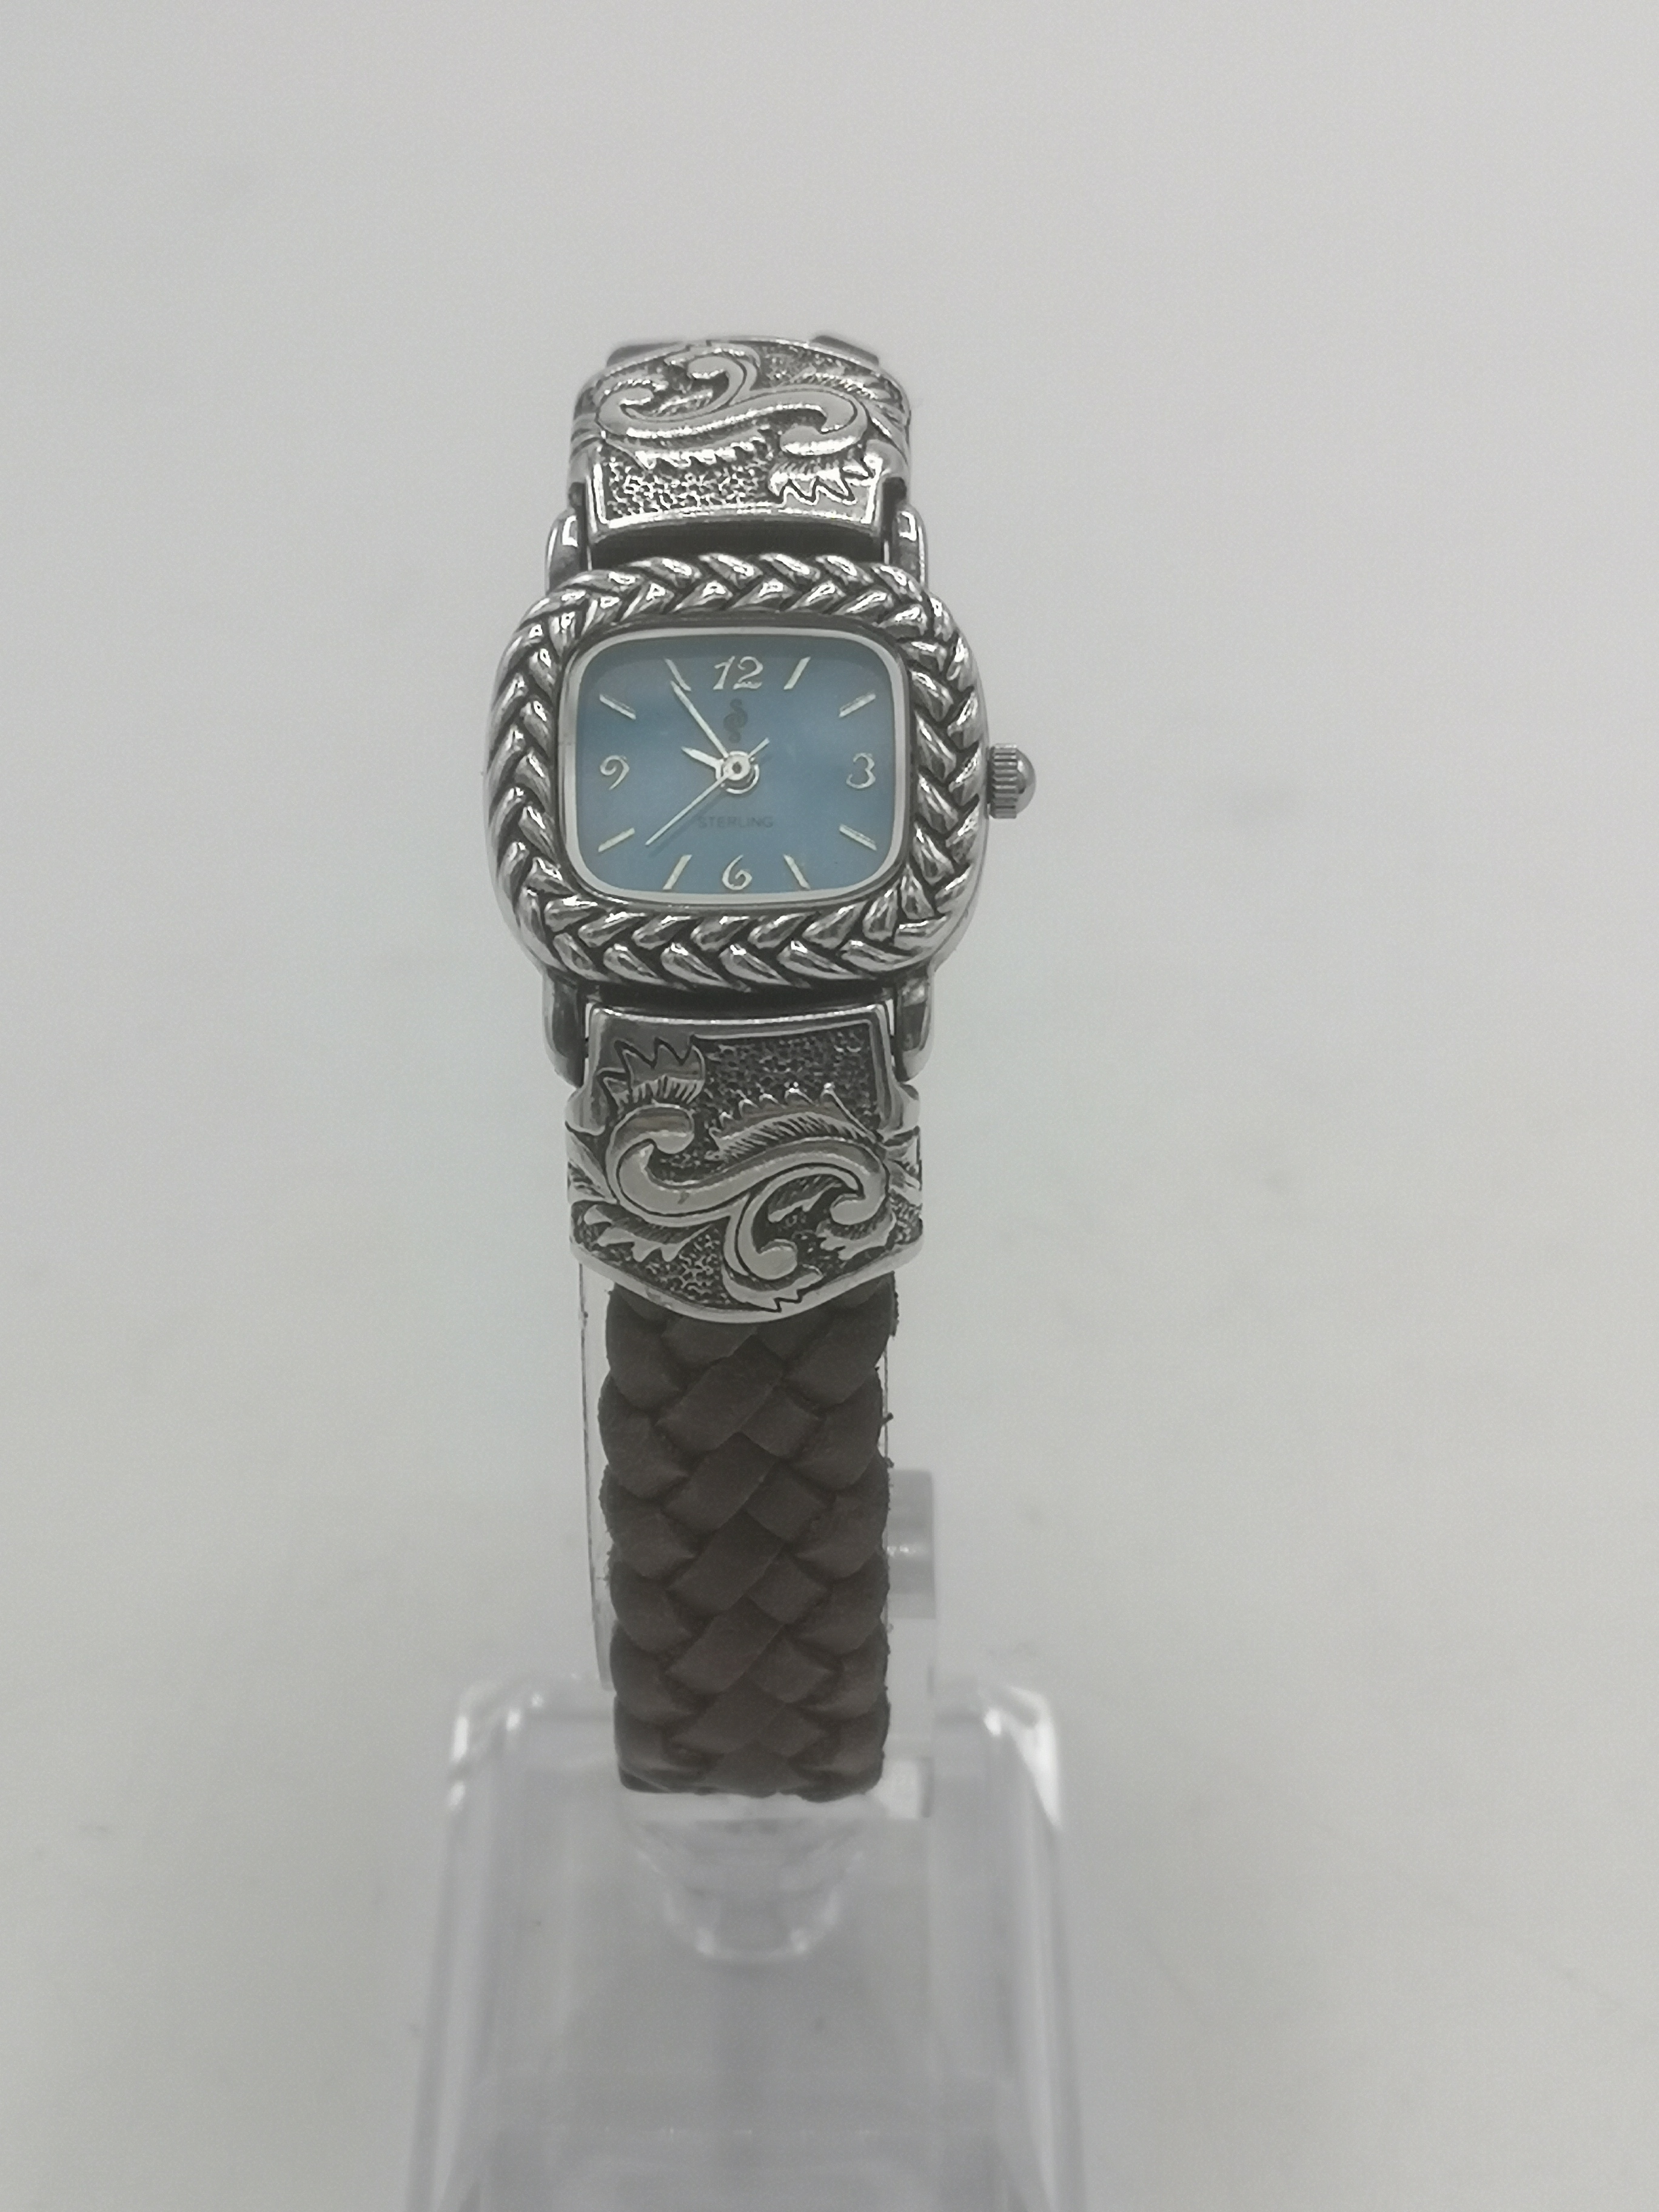 Sterling silver wrist watch